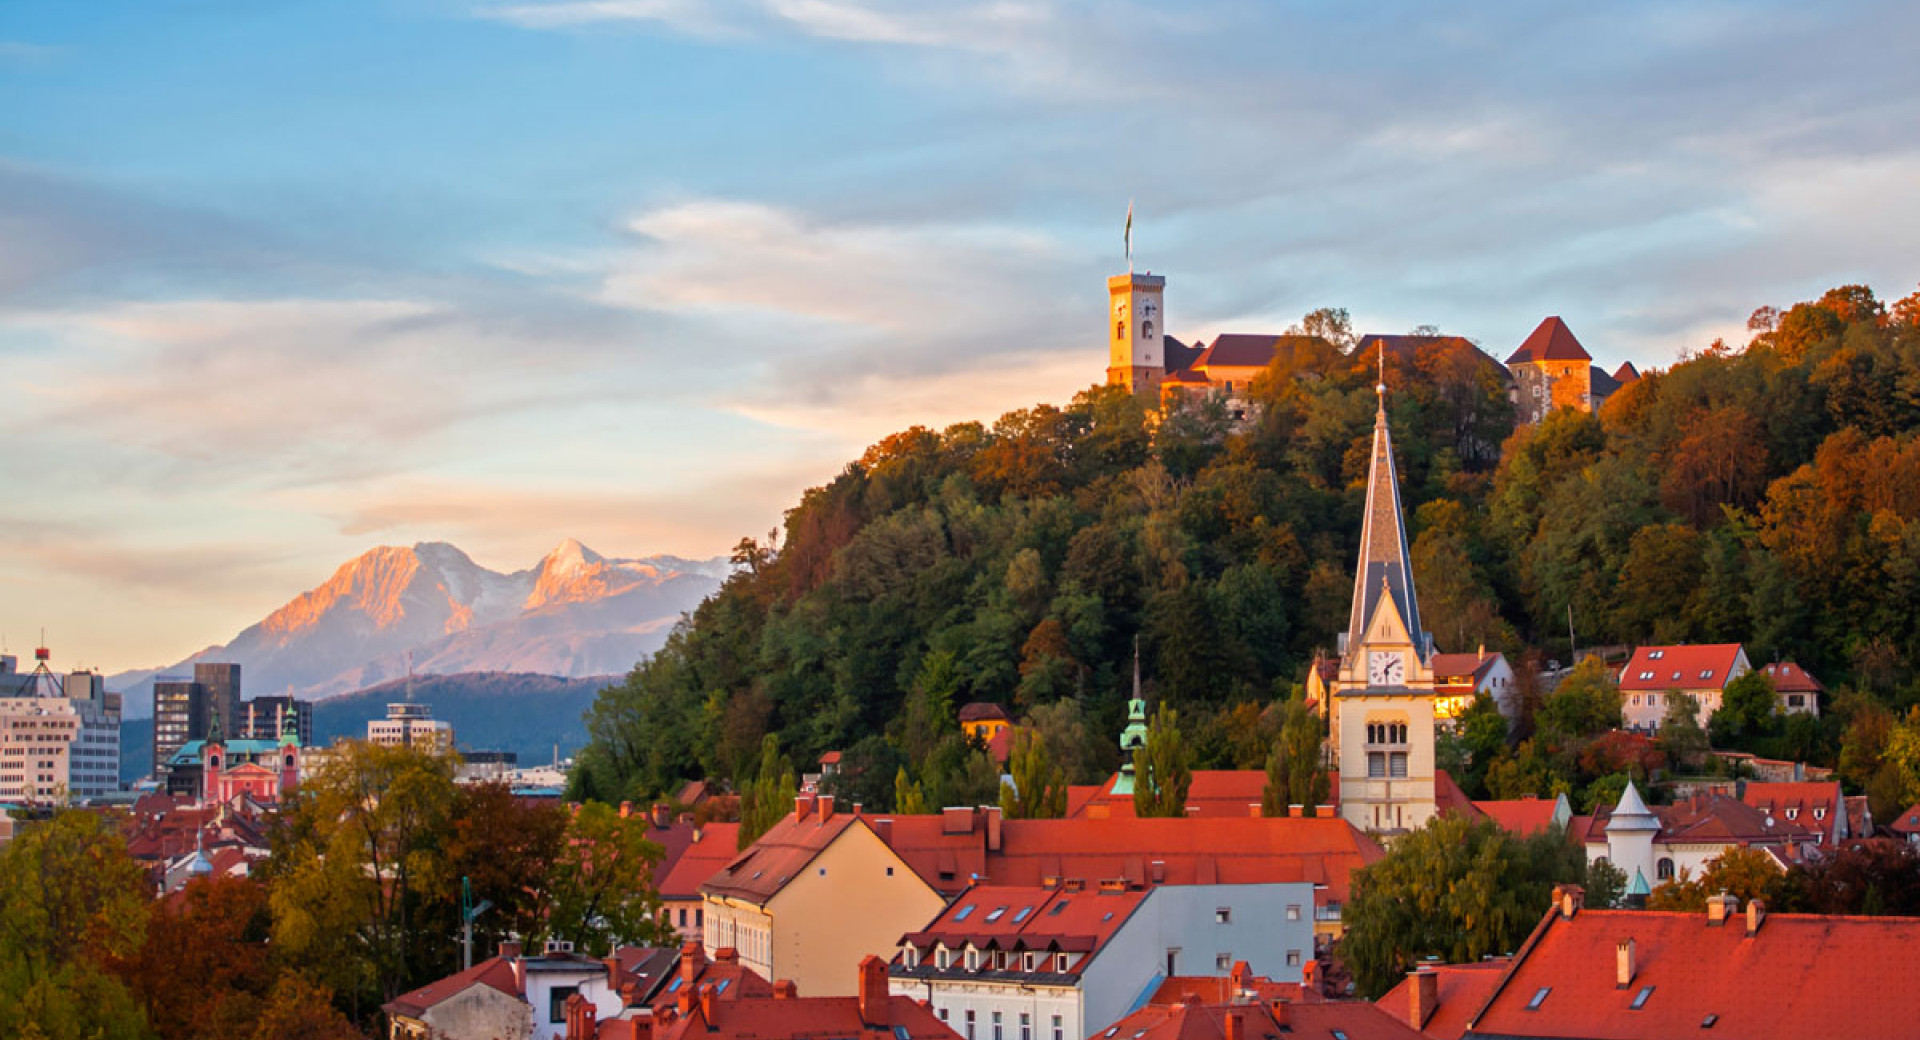 Ljubljanski grad nad strehami ljubljanskih hiš. V ozadju Alpe.